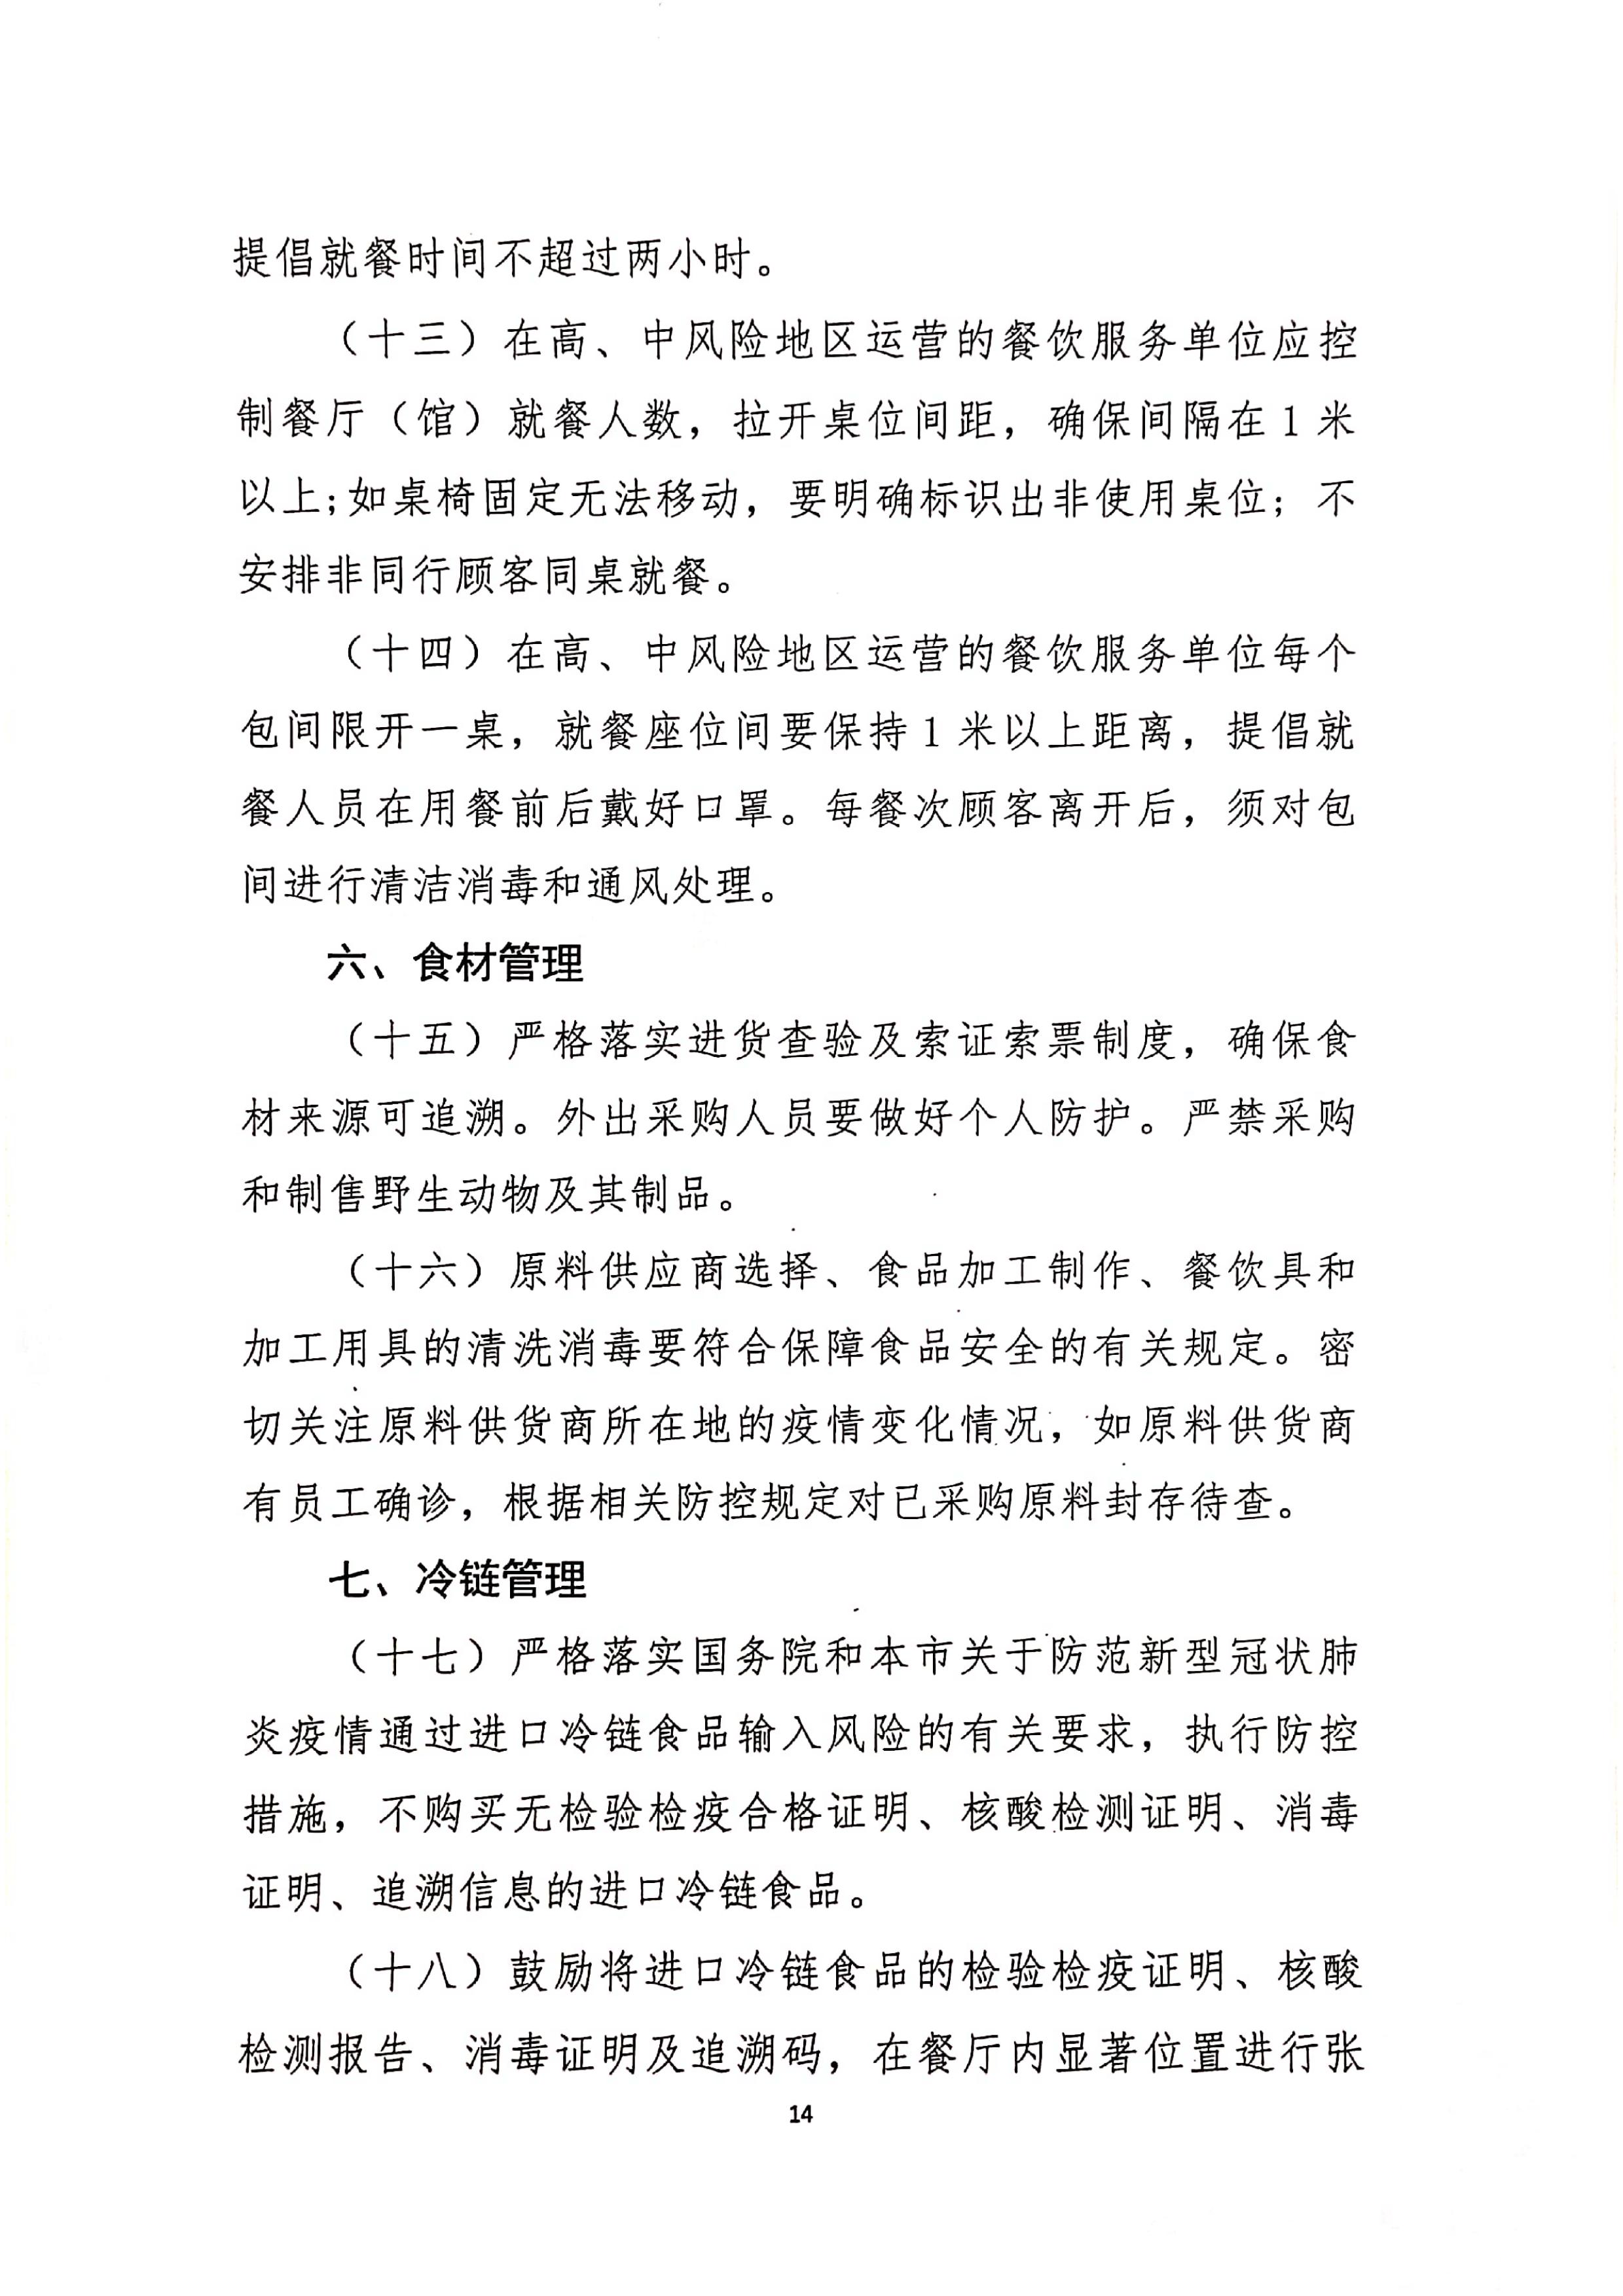 发文4号-关于印发《上海市商场、超市疫情防控技术指南》等4个指南的通知_14.jpg